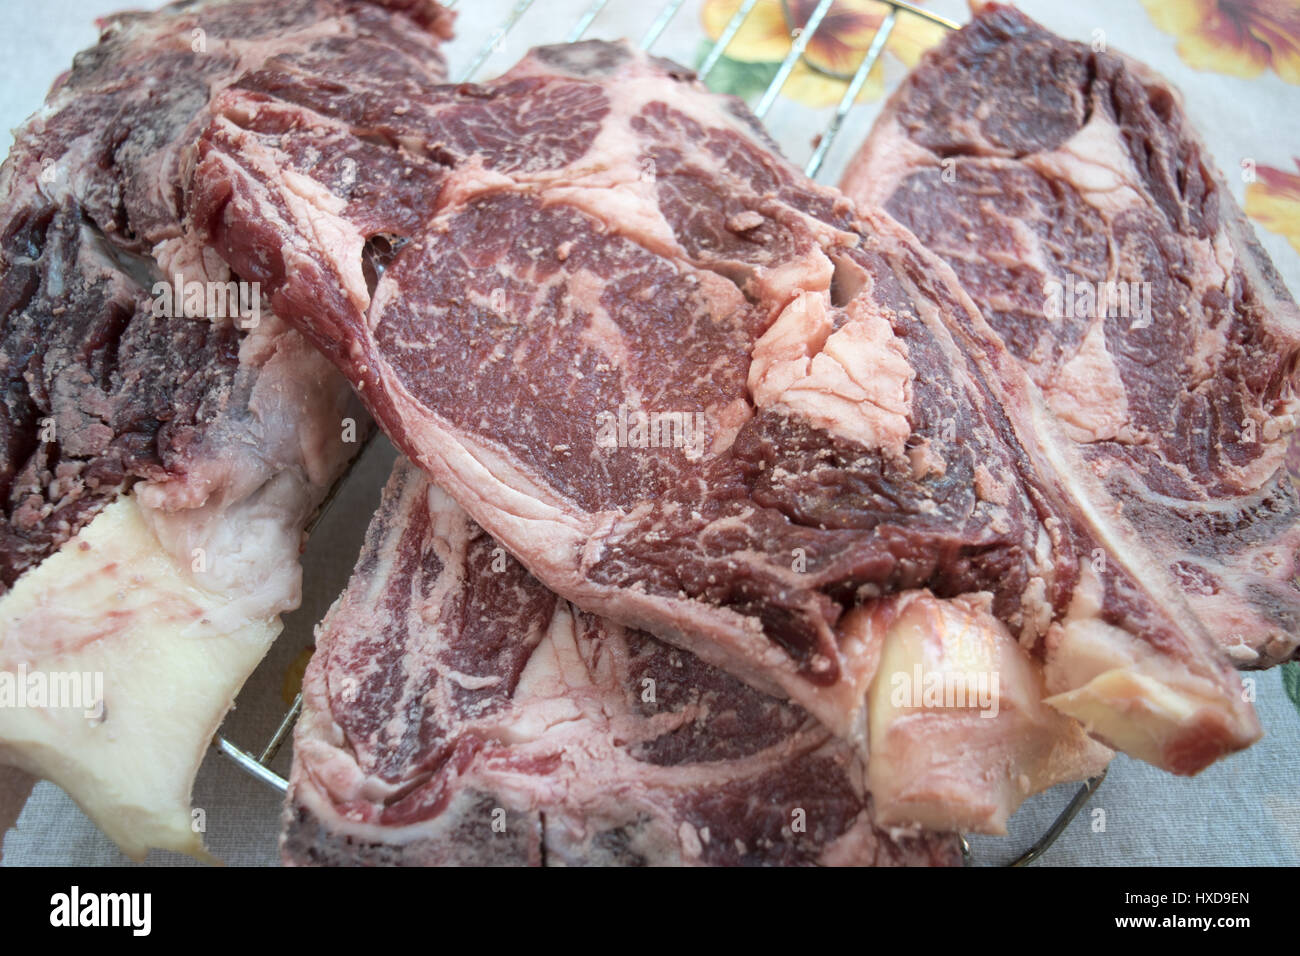 Florentiner Steak Kuh nämlich Fleisch dick geschnitten Stockfotografie -  Alamy